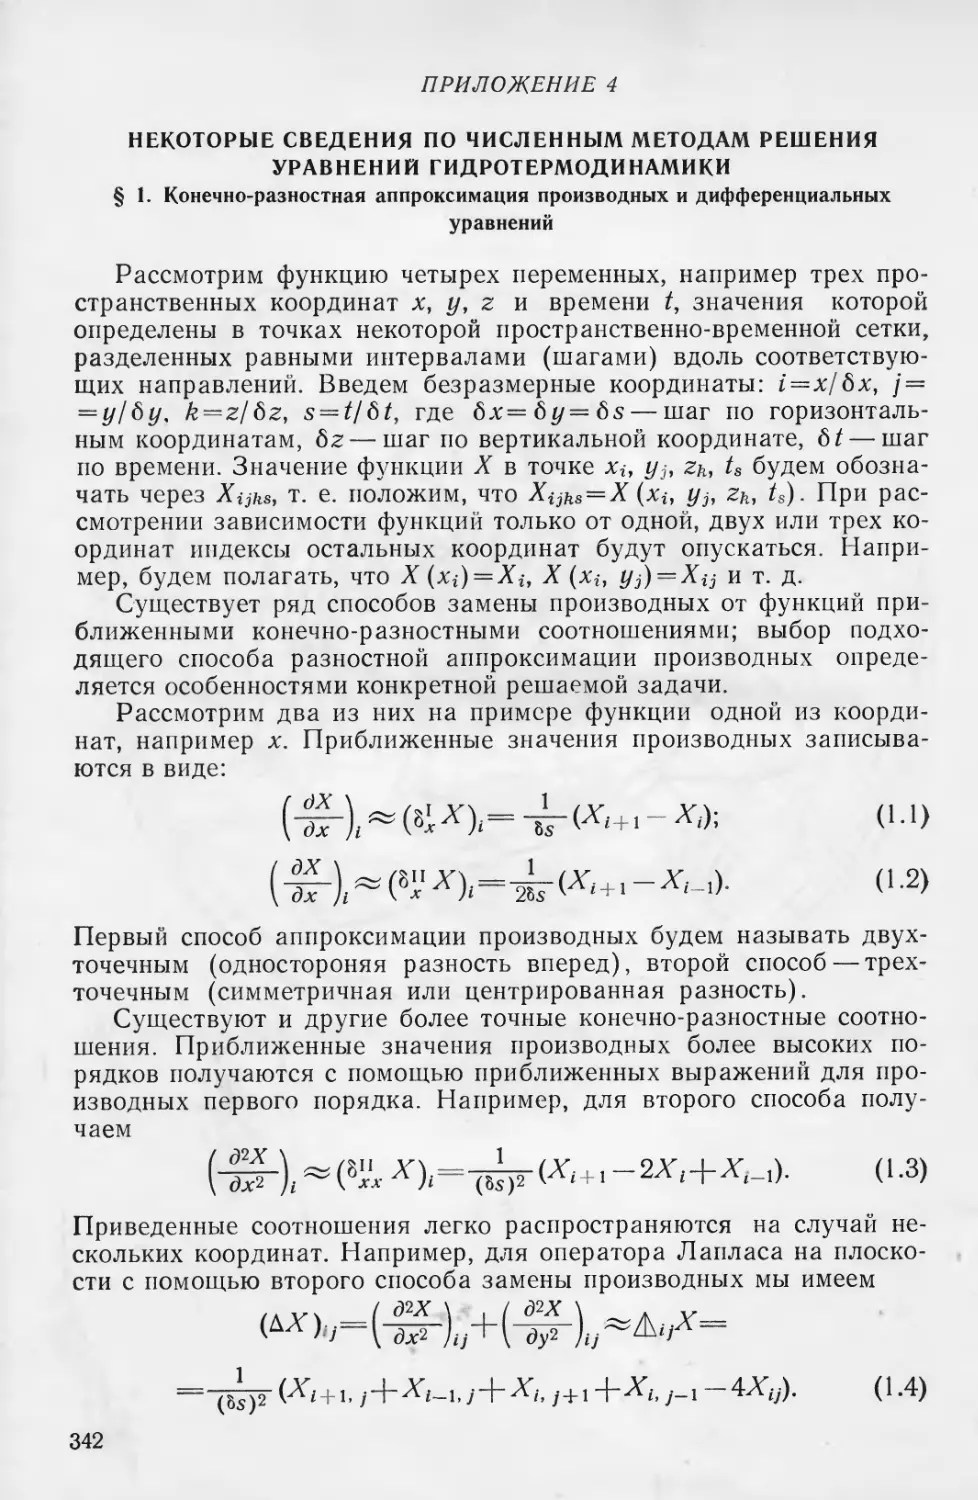 Приложение 4. Некоторые сведения по численным методам решения уравнении гидротермодинамики